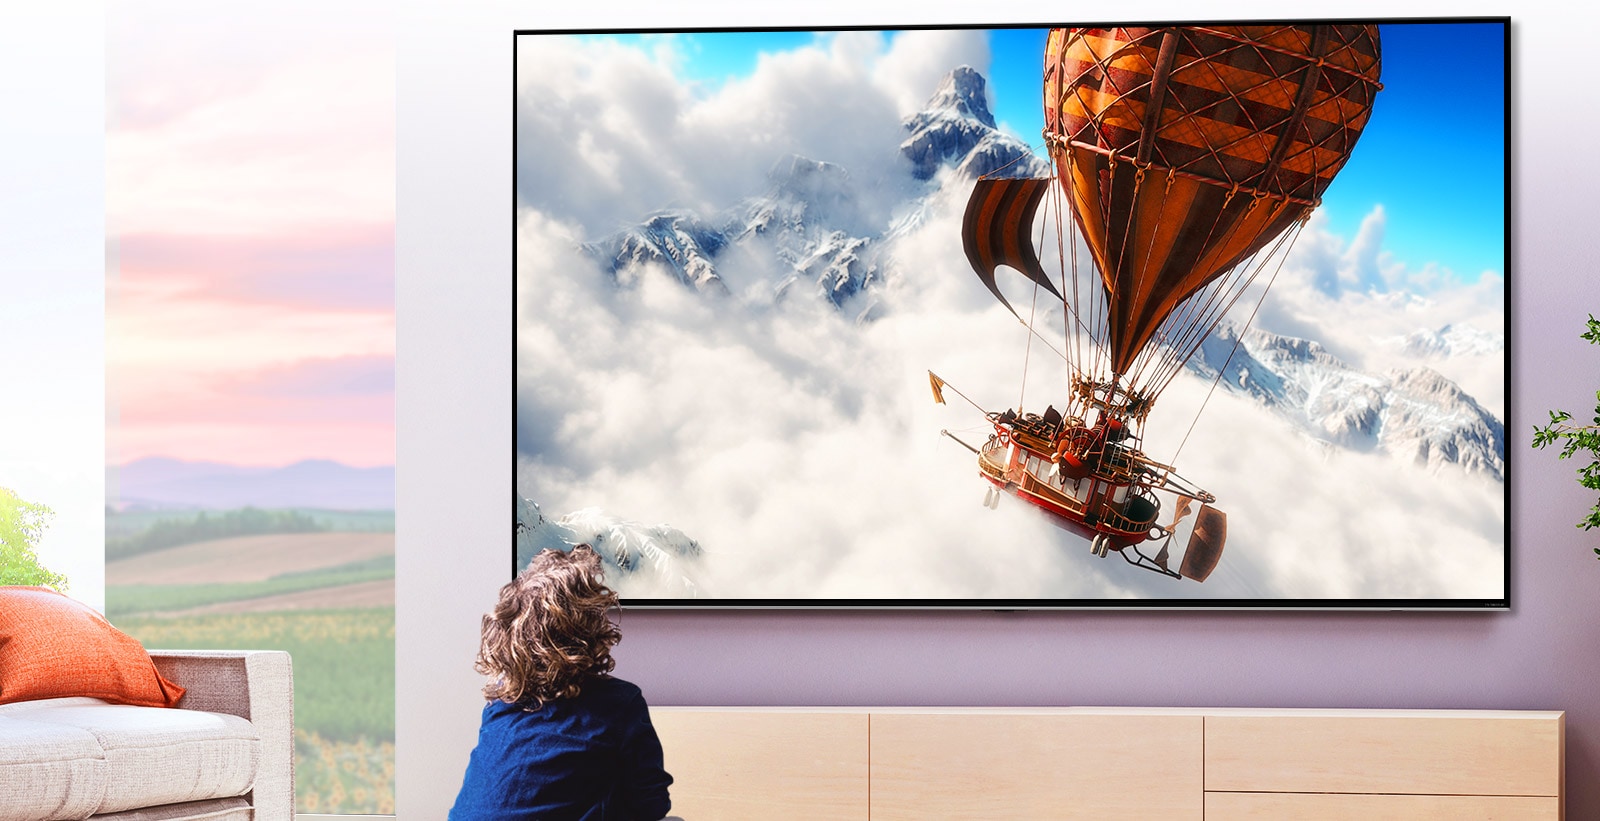 Ένα παιδί που κάθεται μπροστά από μια μεγάλη επίτοιχη τηλεόραση, σε ένα φωτεινό δωμάτιο. Στην οθόνη φαίνεται ένα αερόστατο που πετά ανάμεσα στα σύννεφα, μπροστά από ένα βουνό.